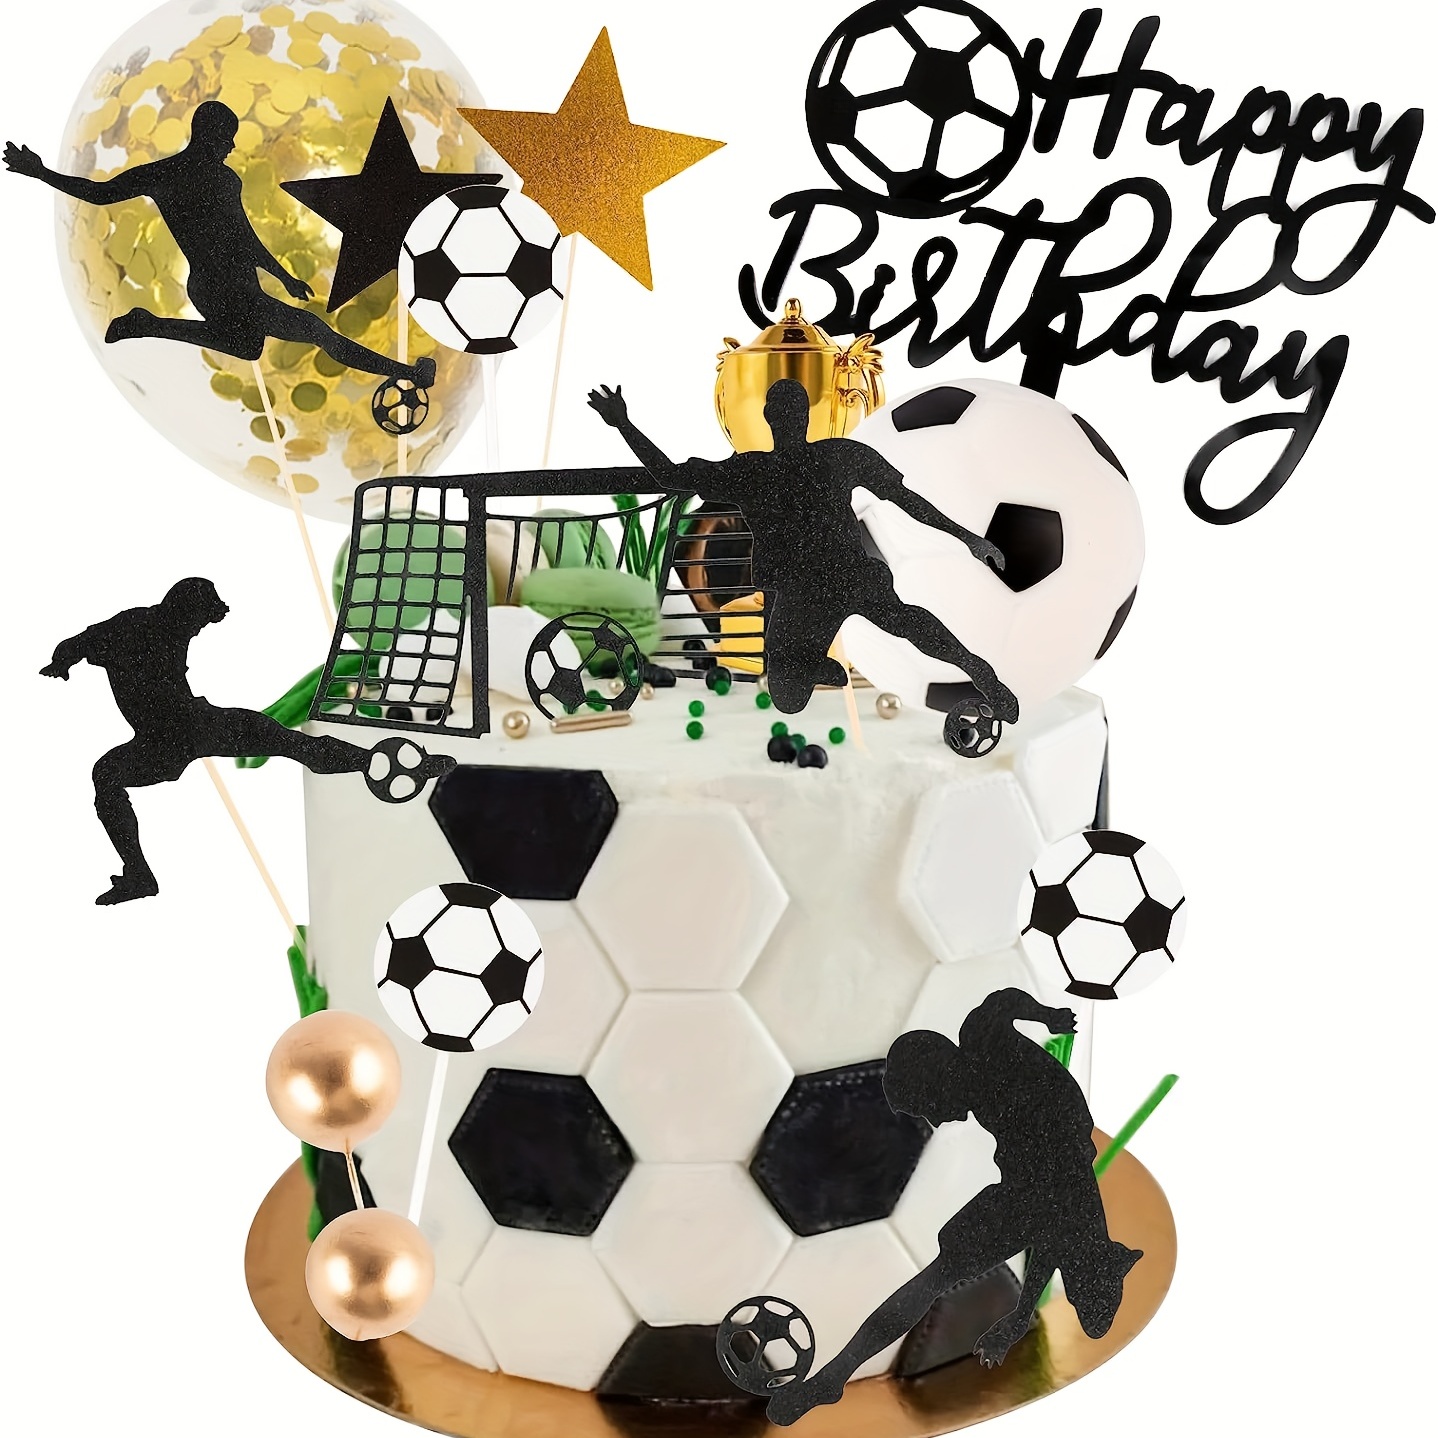 Decoración de Football  Decoracion cumpleaños de futbol, Decoración de  fútbol, Fiestas temáticas de fútbol